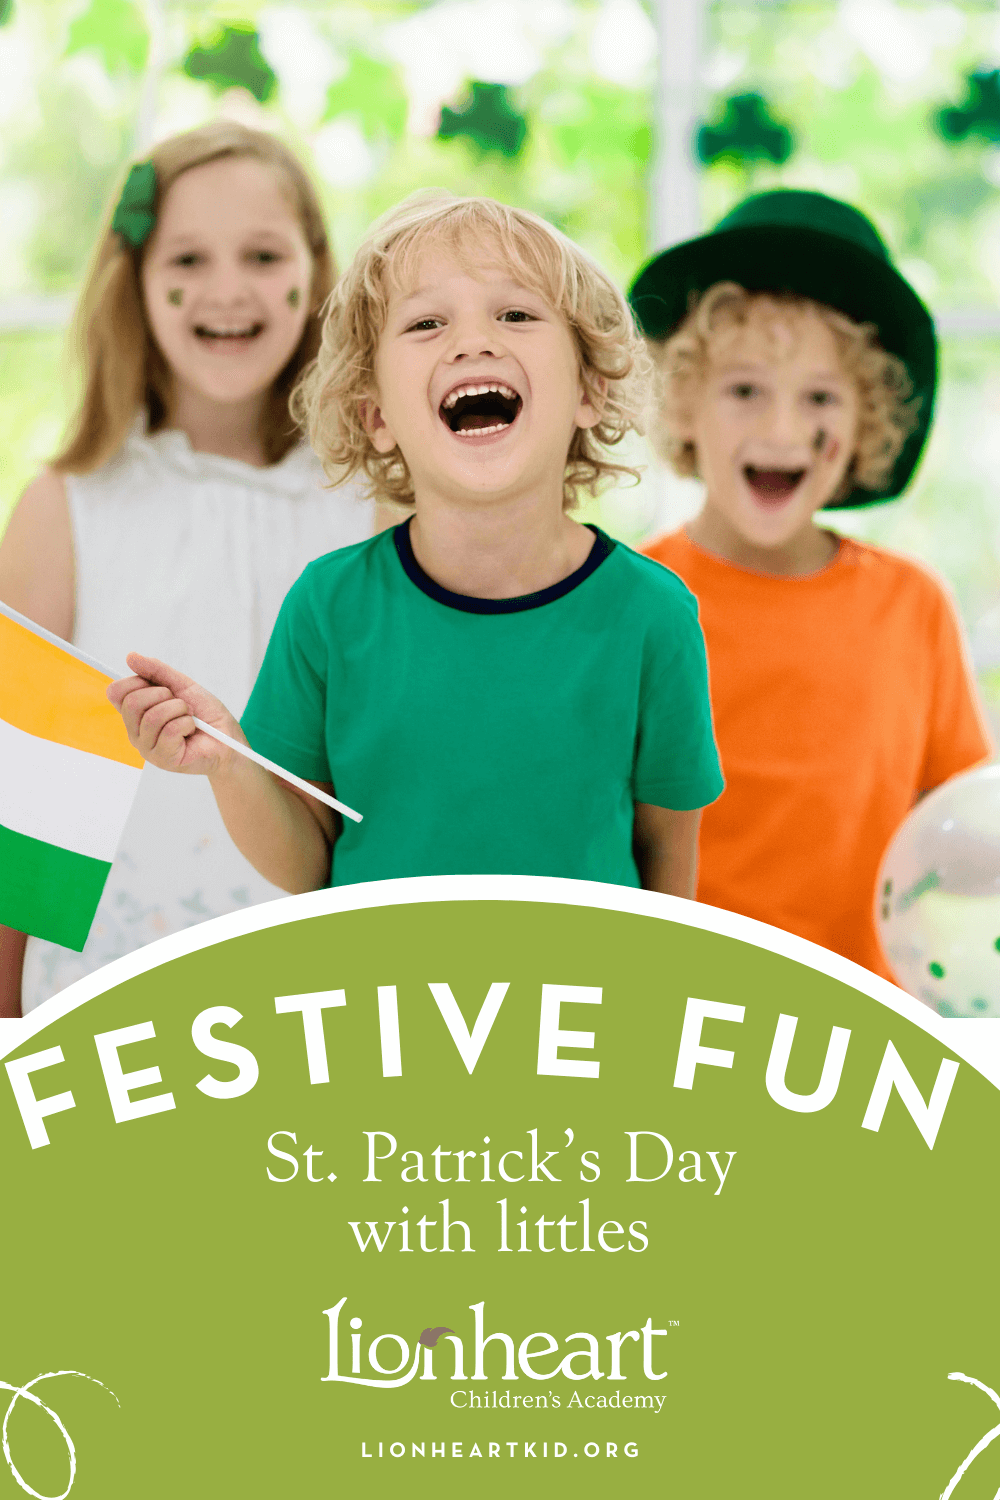 Kids having fun celebrating St. Patrick’s Day